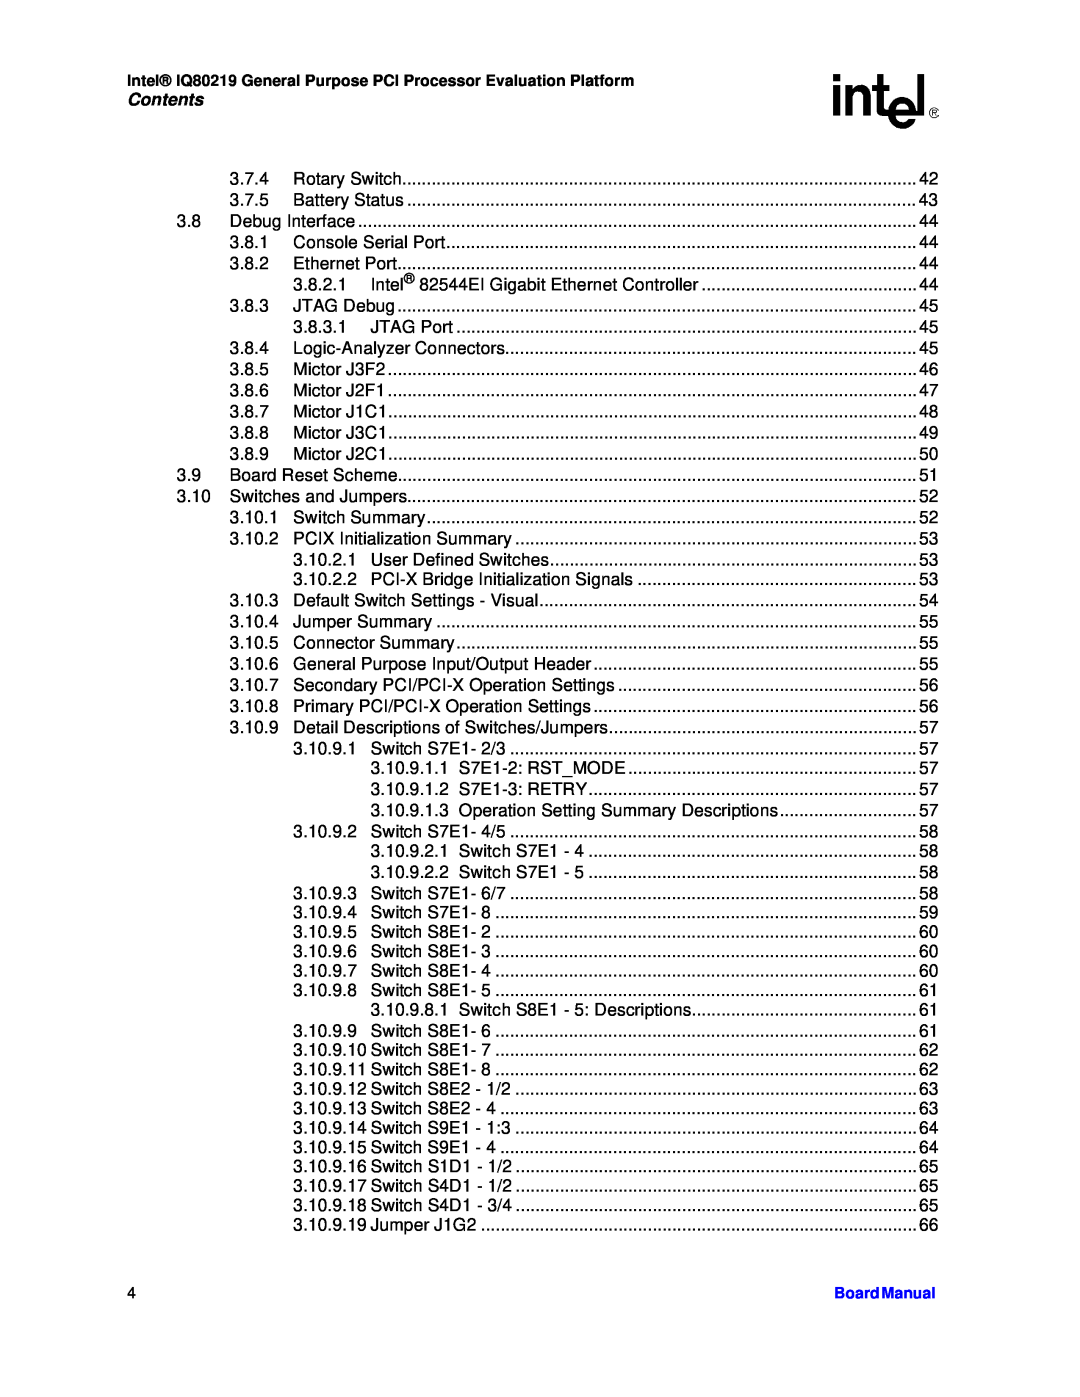 Intel IQ80219 manual Contents, 3.7.4 